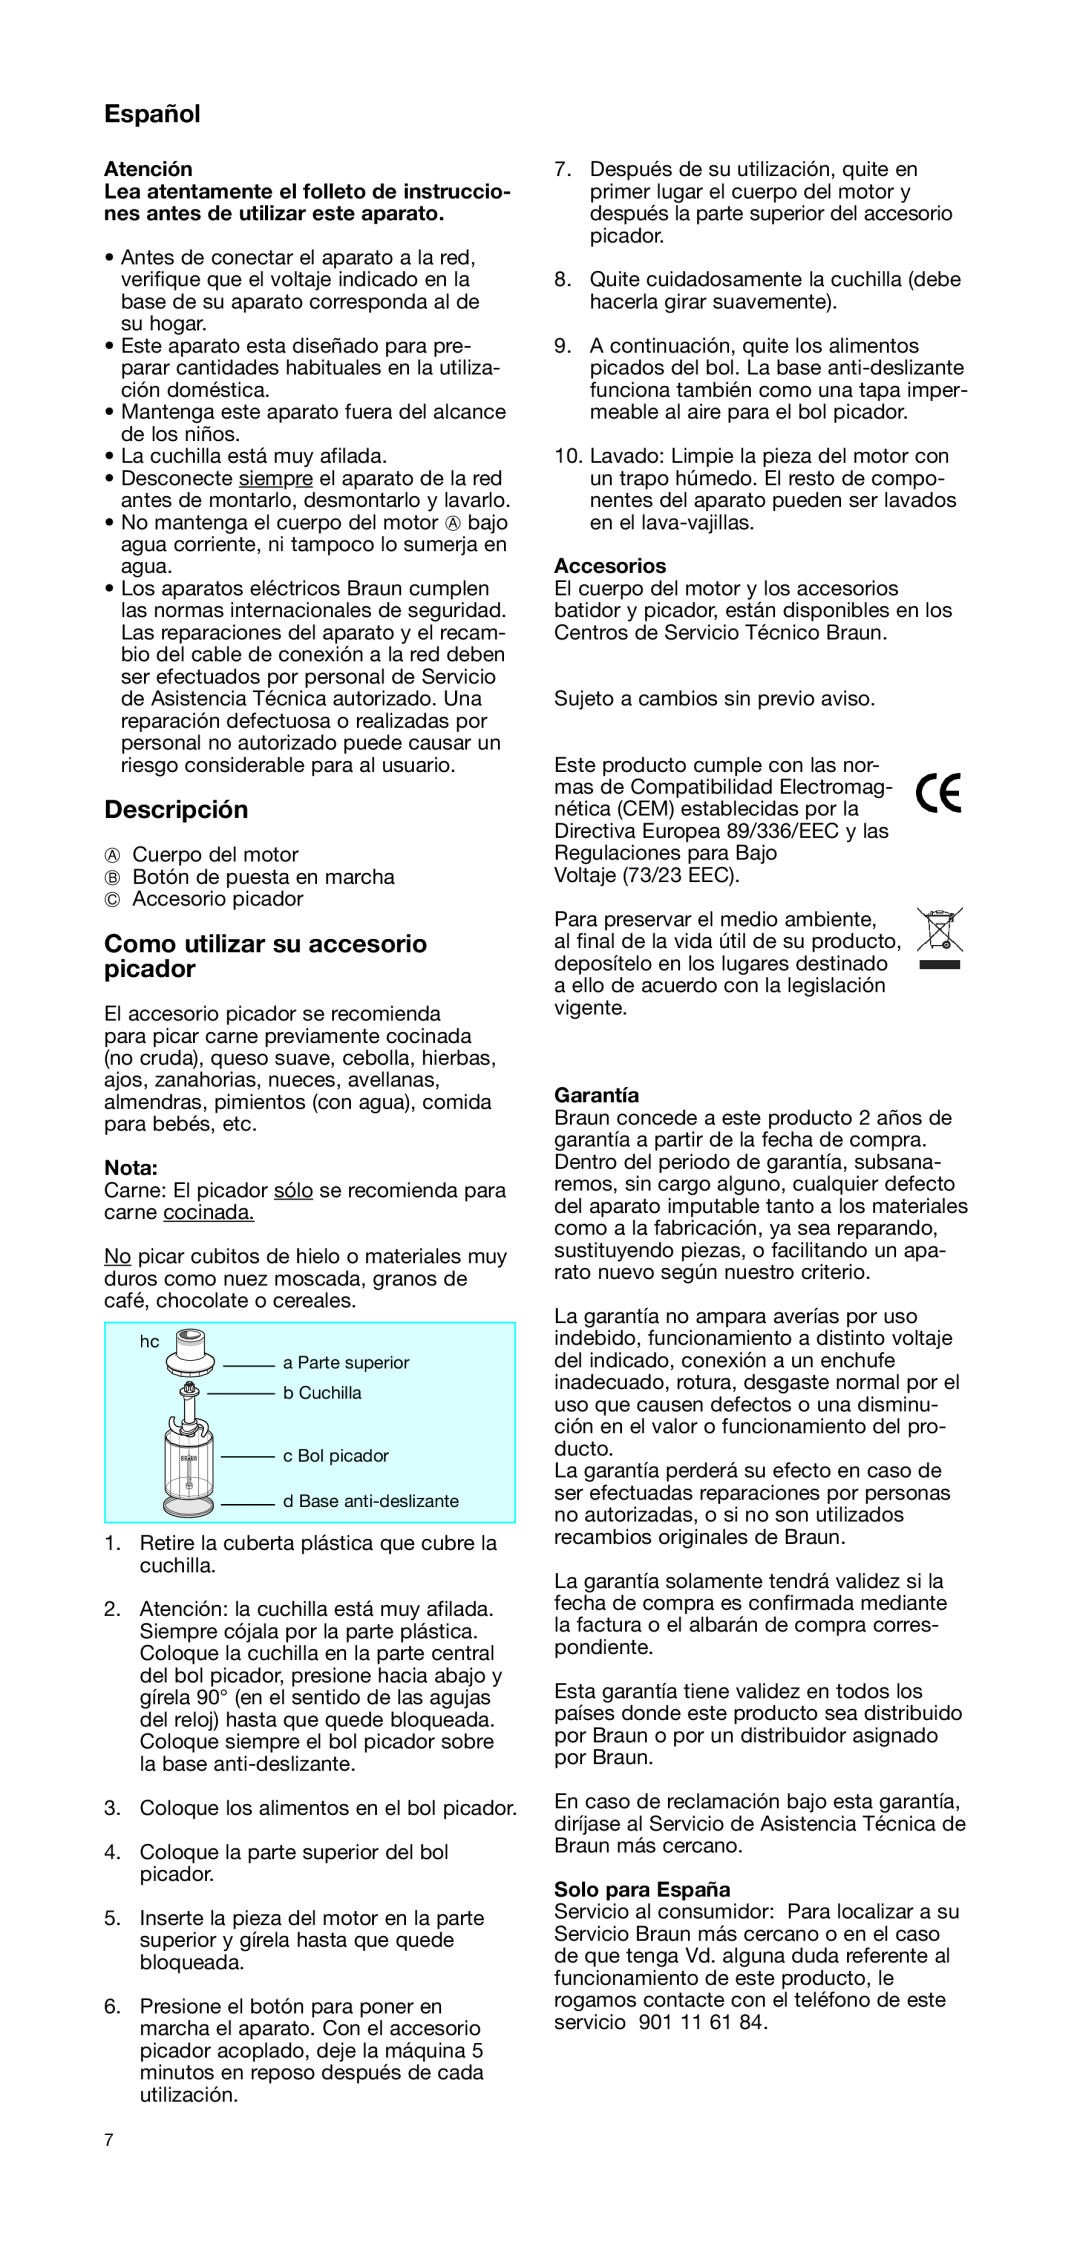 Braun CH 100 manual Español, Descripción, Como utilizar su accesorio picador, Atención, Nota, Accesorios, Garantía 